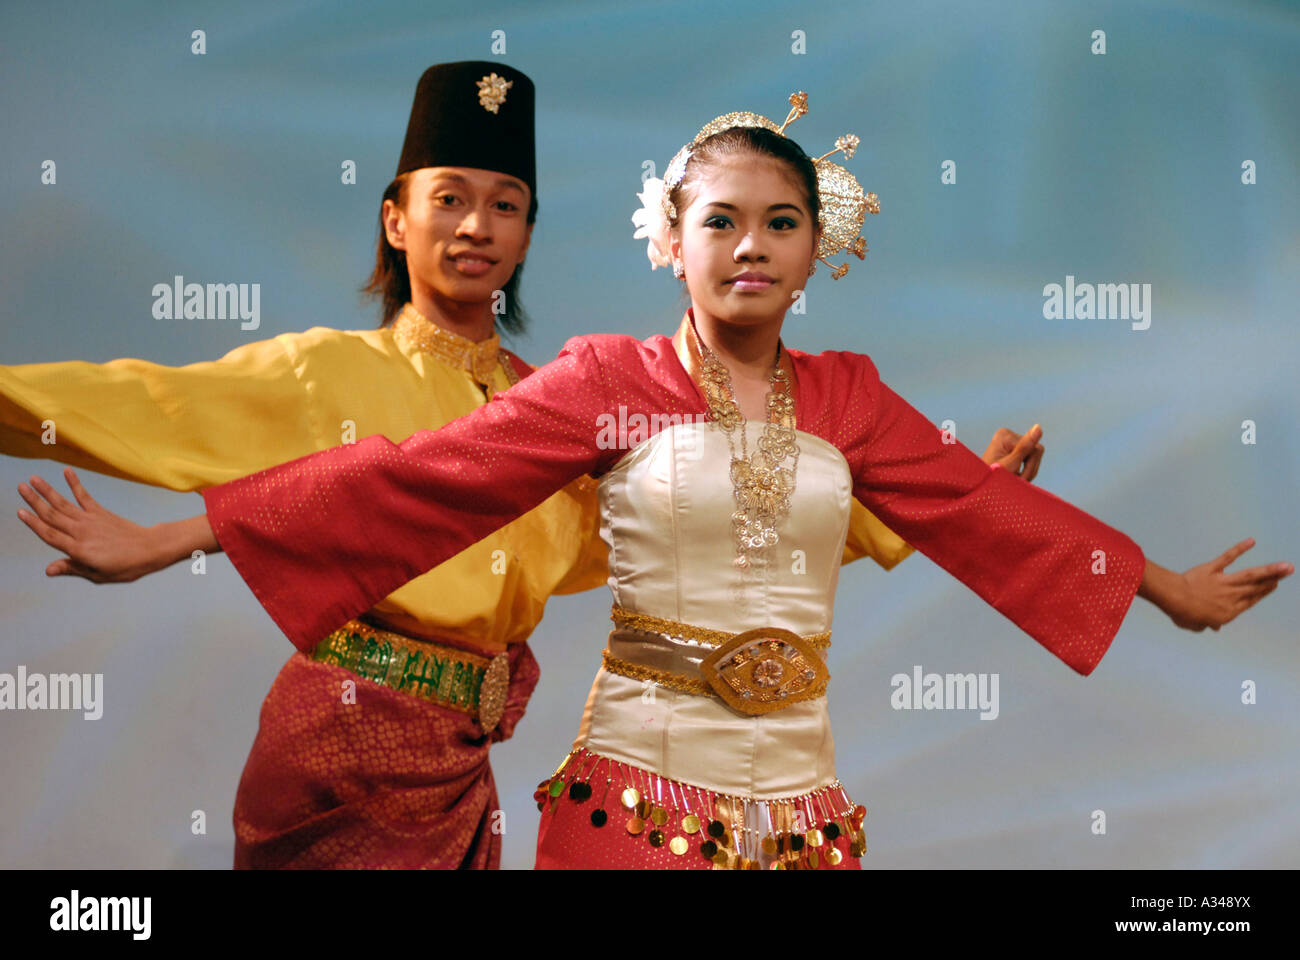 Danseurs d'effectuer la Joget une danse sociale qui est le plus populaire de la danse traditionnelle en Malaisie Kuala Lumpur, en Malaisie Banque D'Images